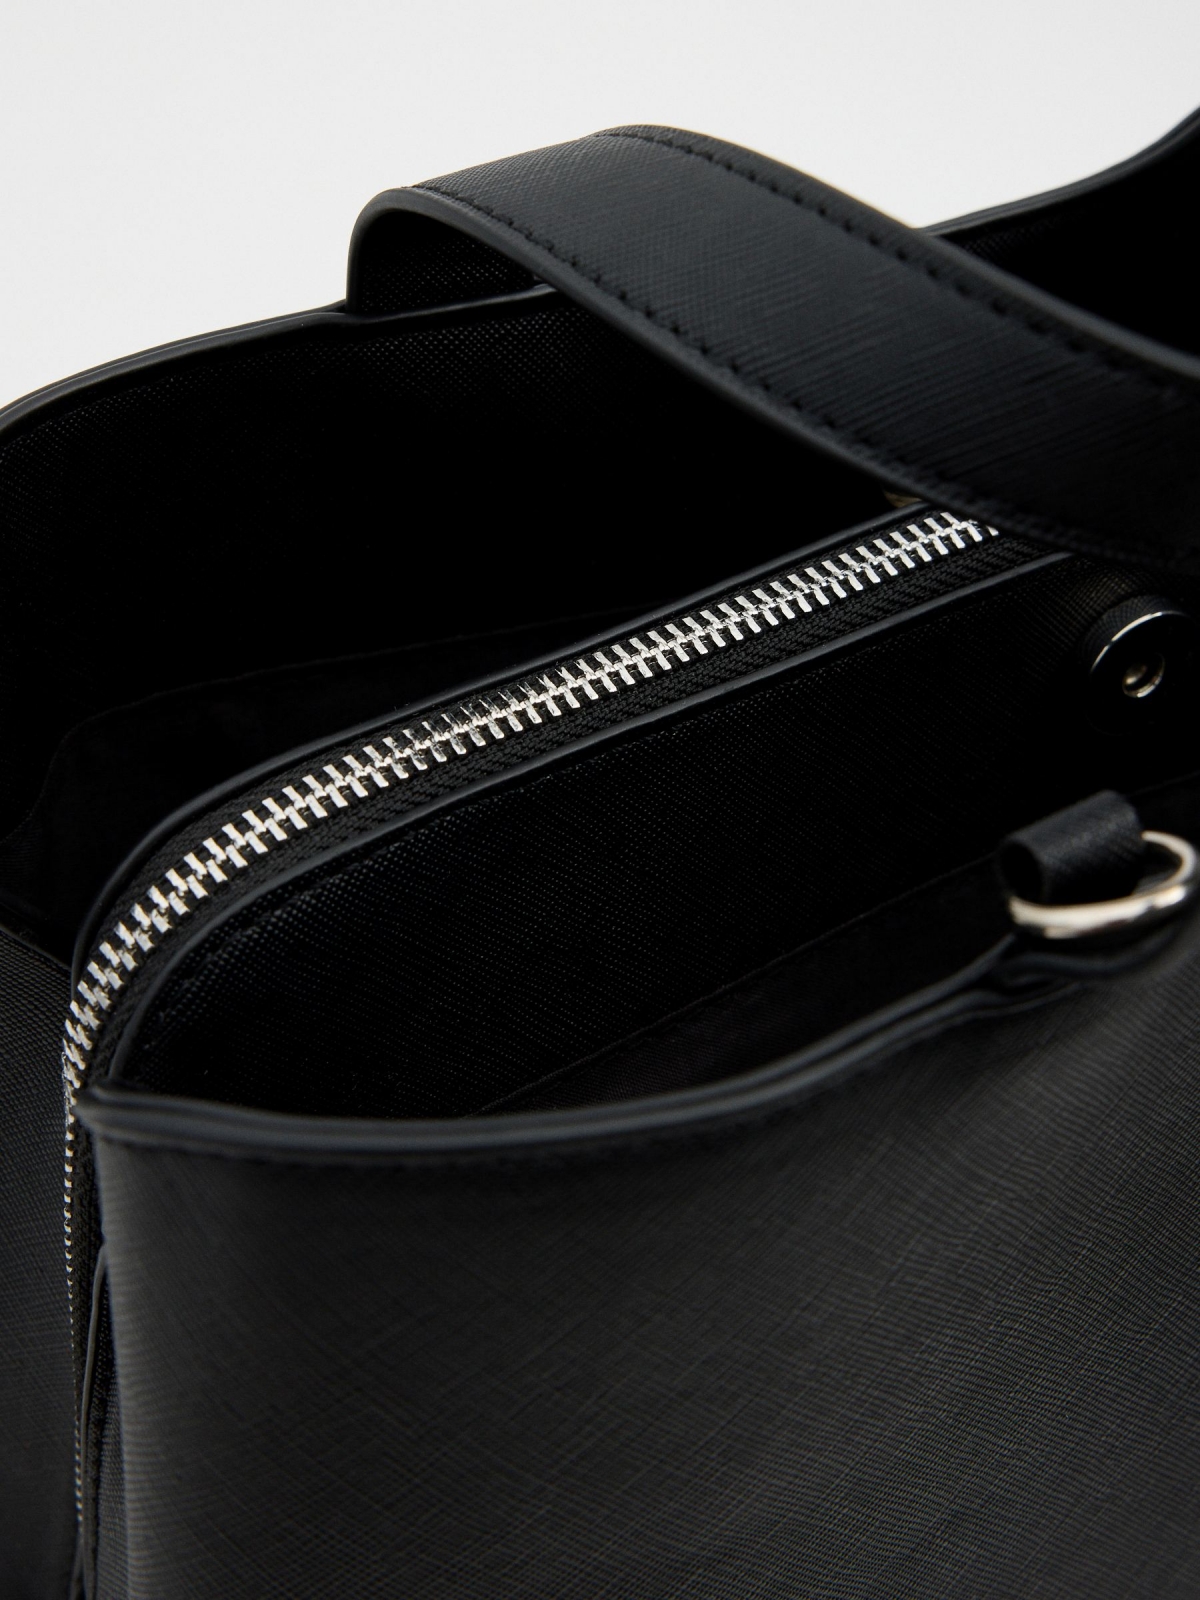 Bolsa shopper preta em couro sintético preto vista detalhe